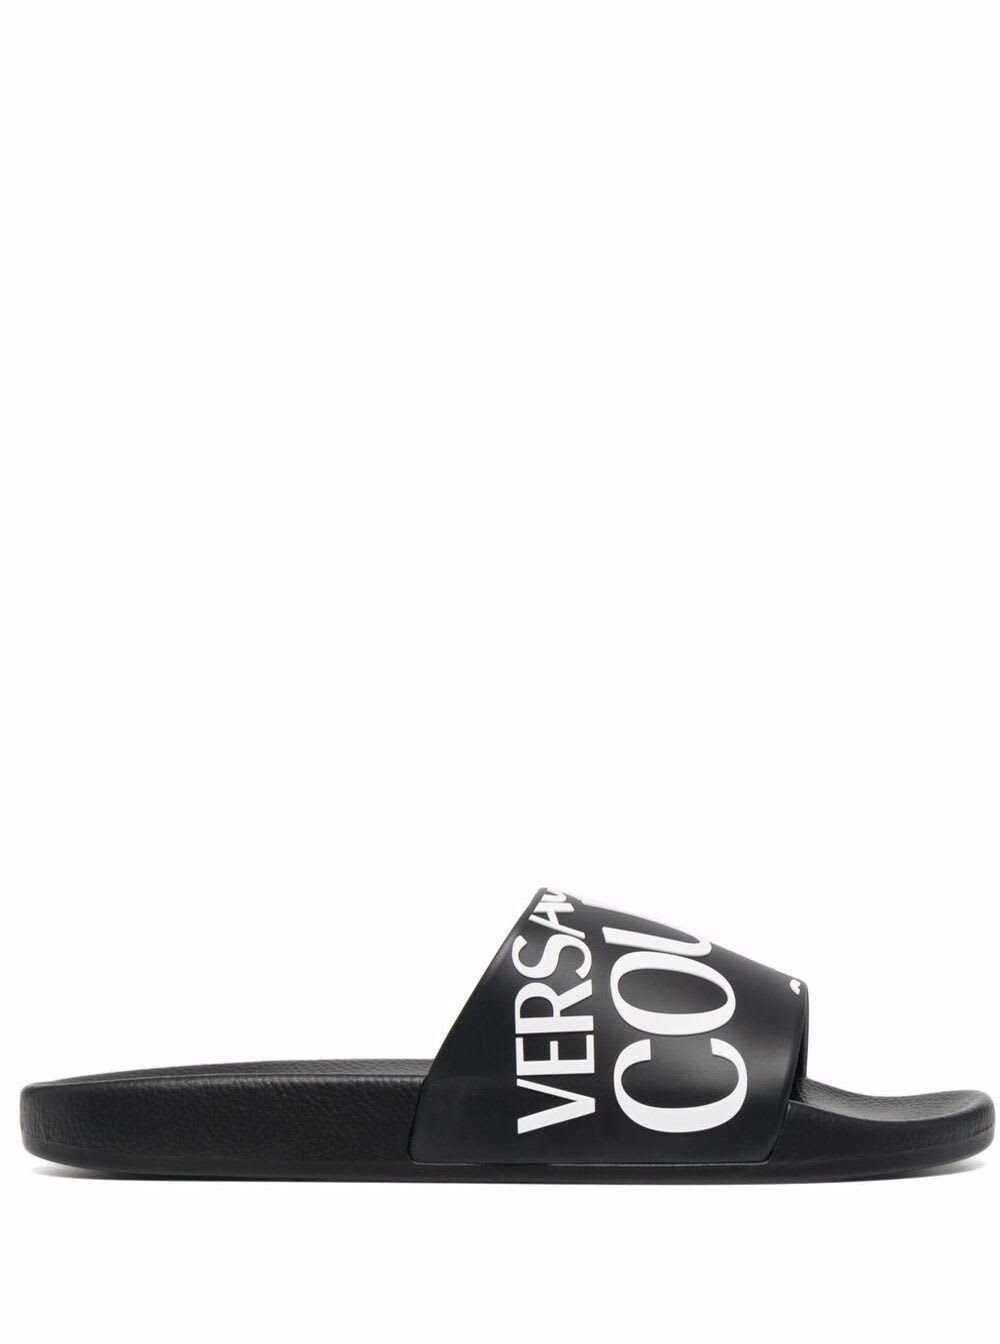 Versace Jeans Couture Mens Black Rubber Slide Sandals